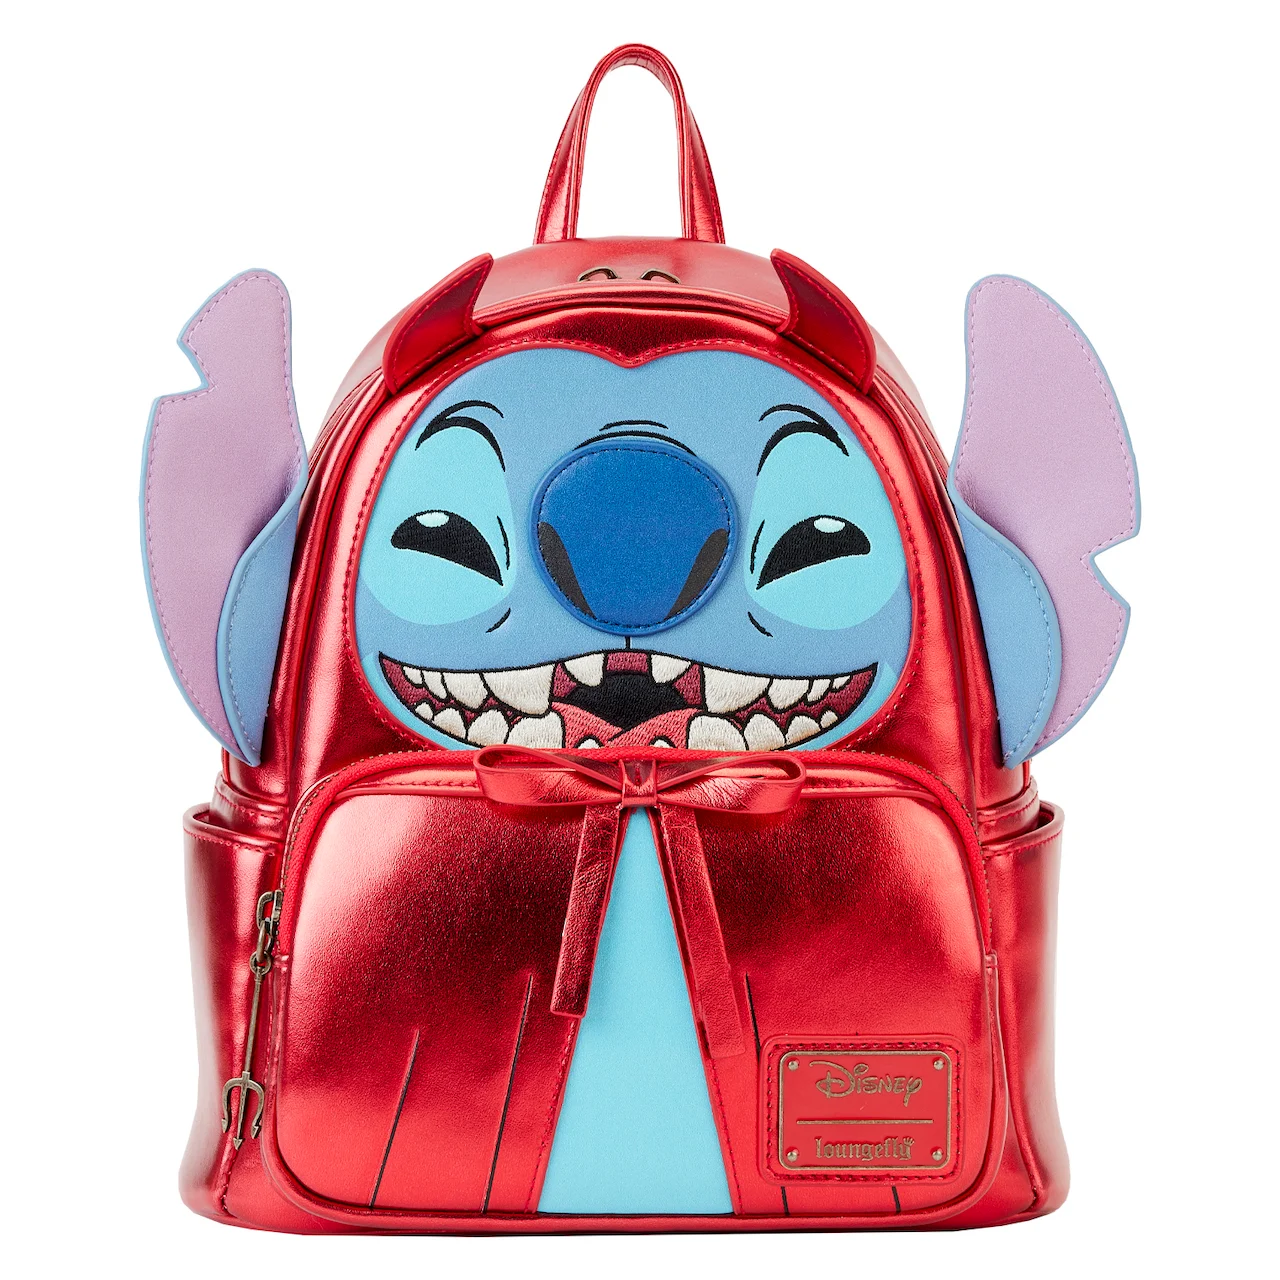 Mini sac à dos Loungefly Lilo & Stitch "Stitch Diable" vue de devant